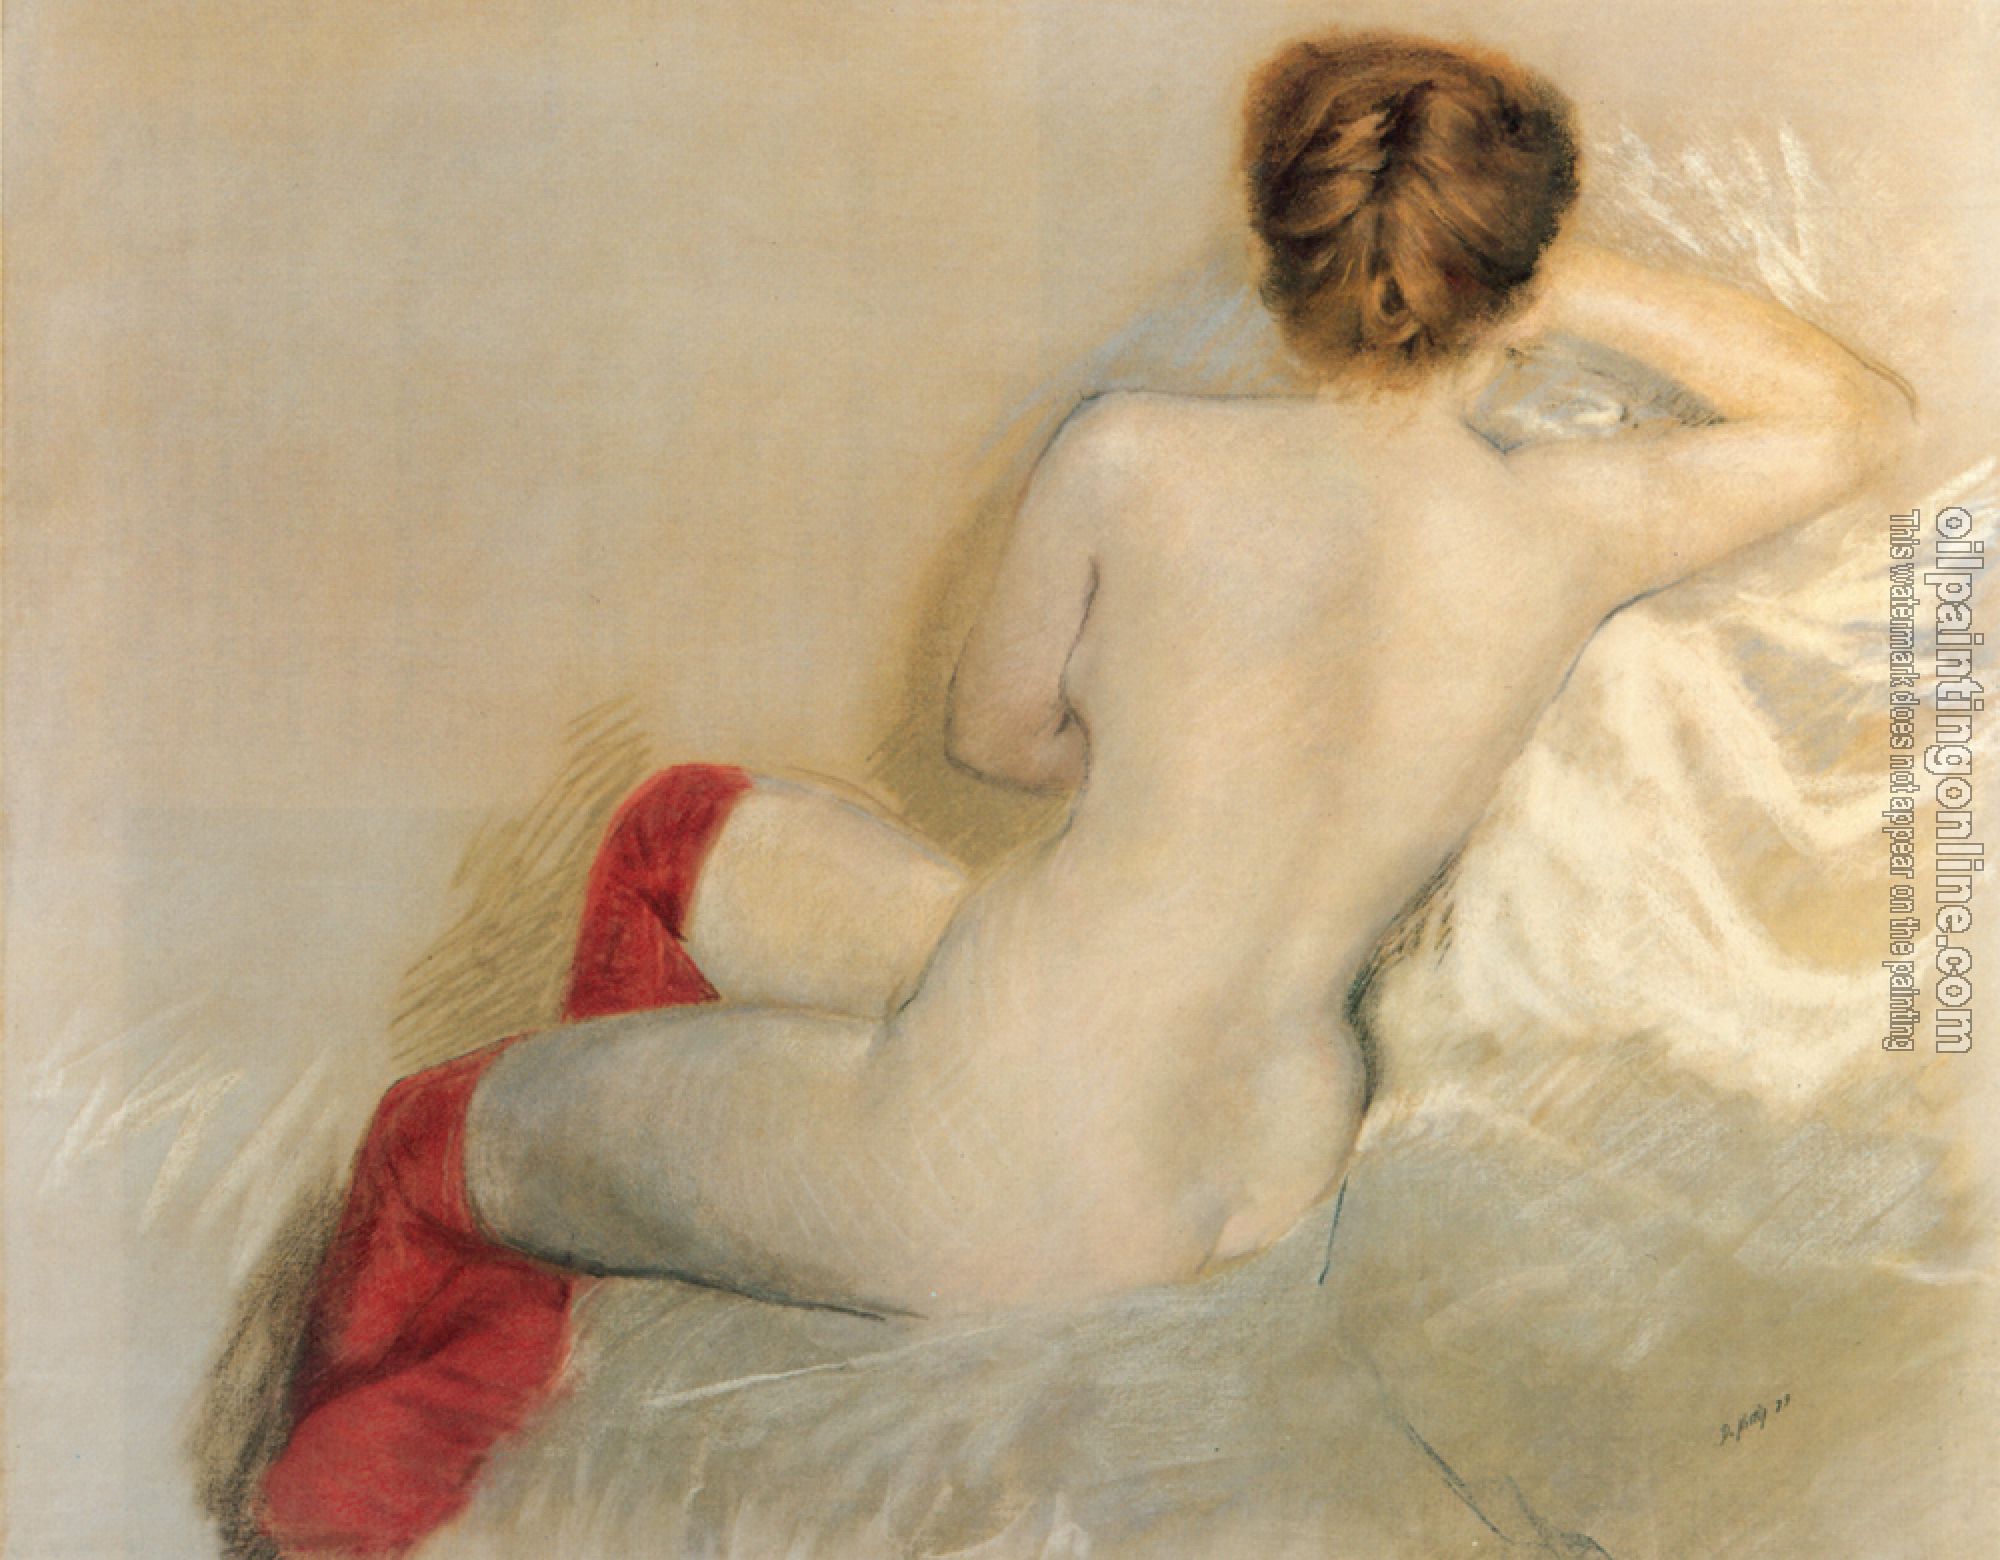 Giuseppe de Nittis - Nudo con le Calze Rosse